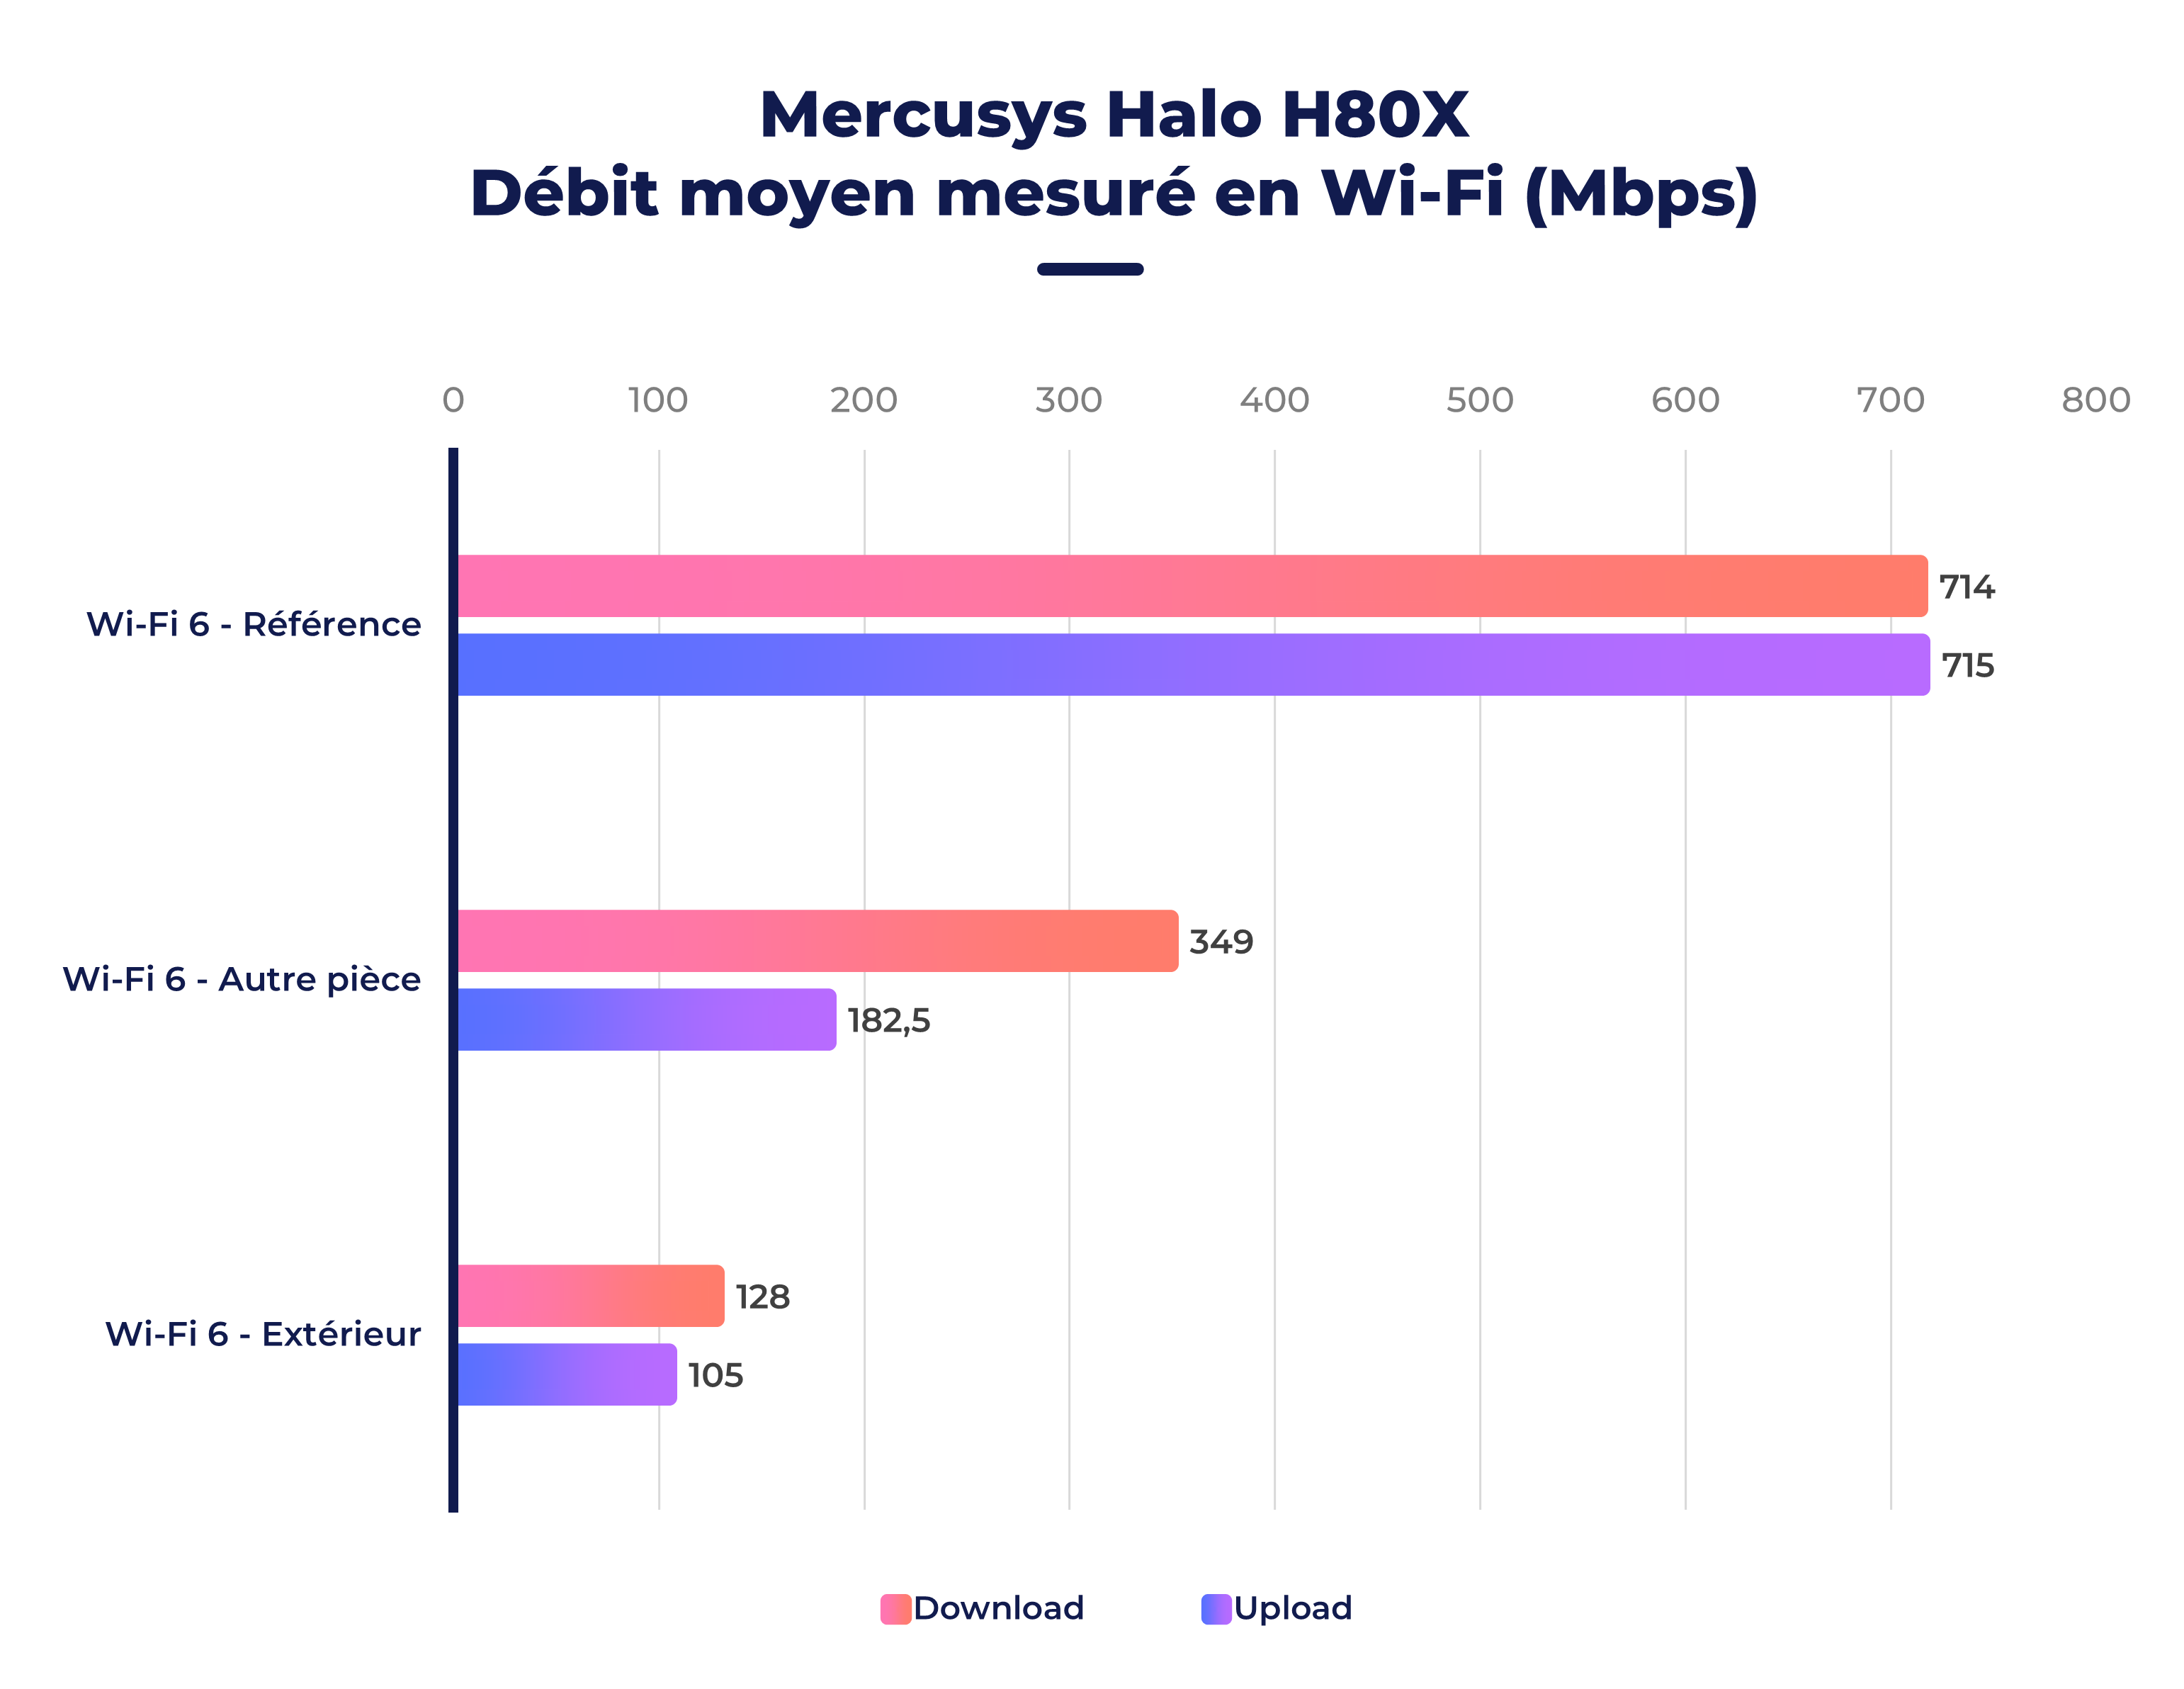 Mercusys Halo H80X et Xiaomi Mesh System, on a testé deux routeurs